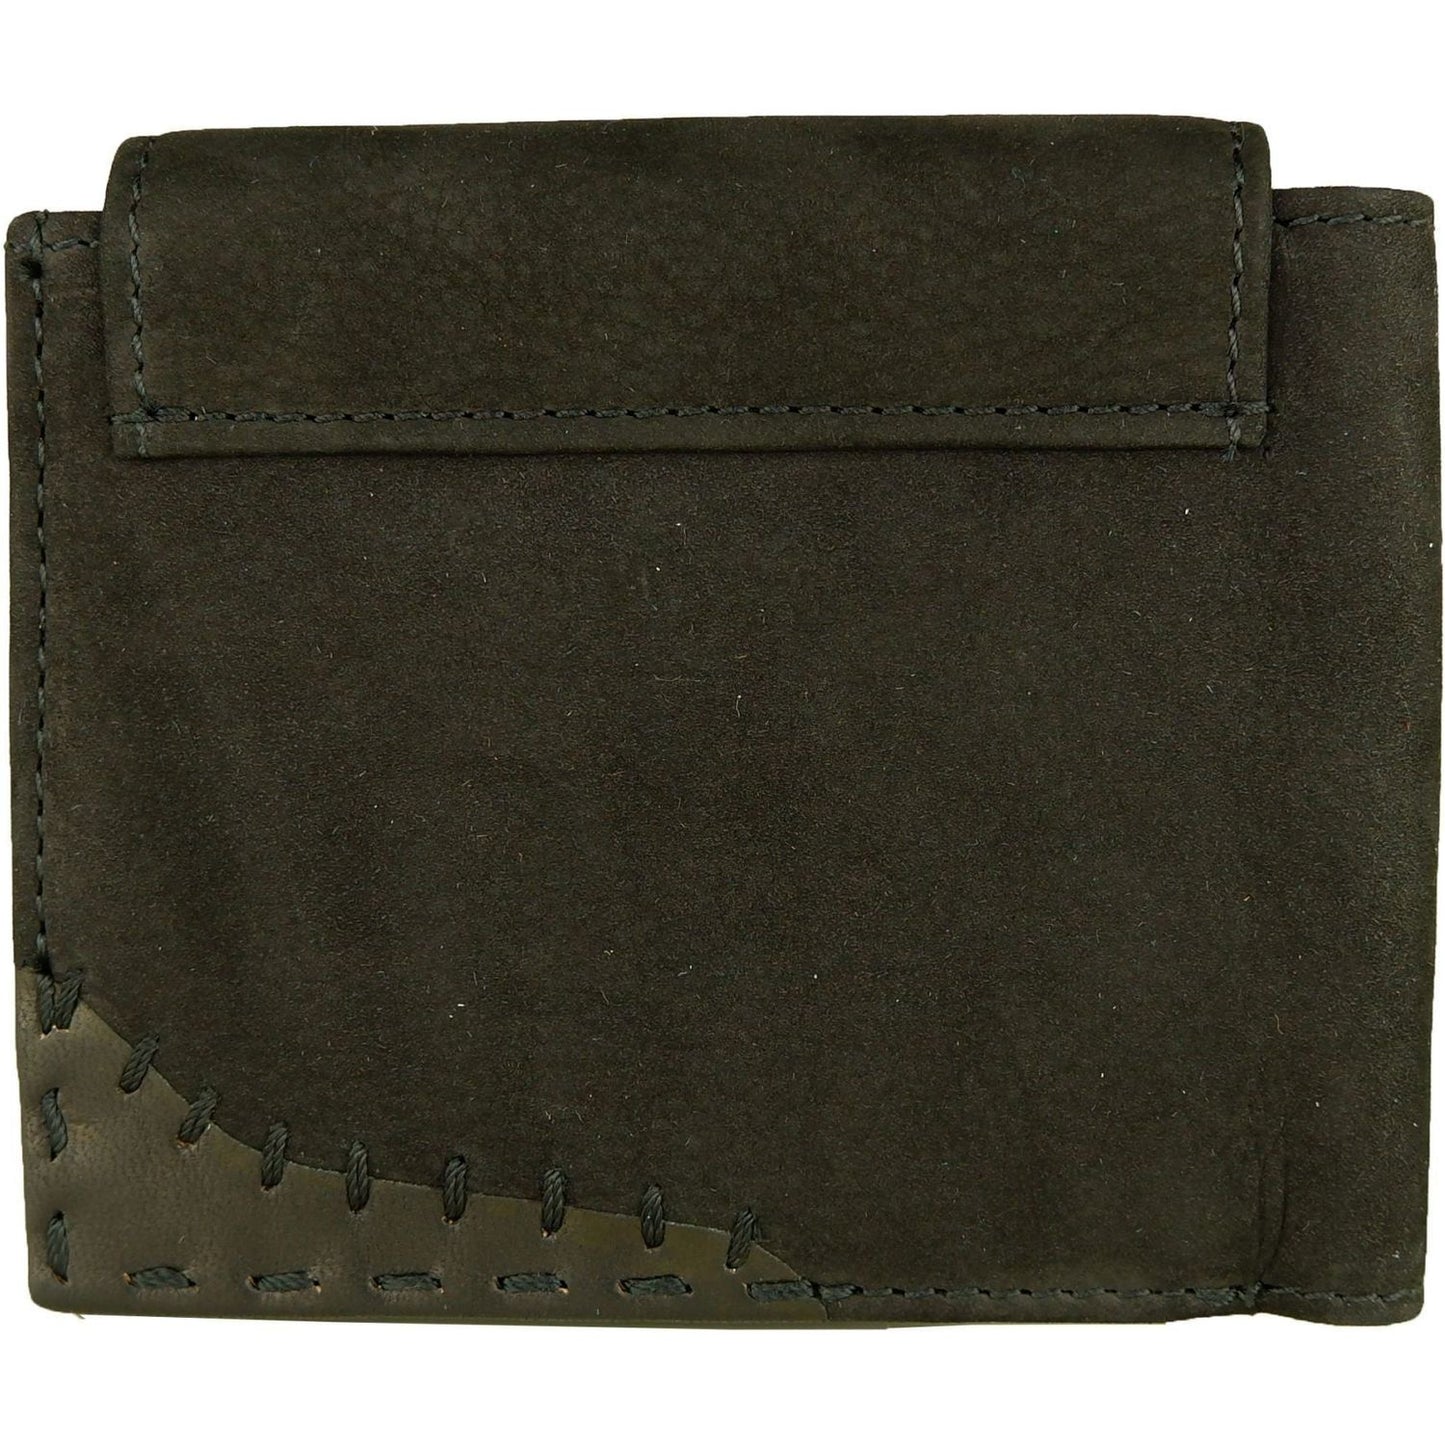 La Martina Elegant Black Leather Wallet for Men black-leather-wallet product-6701-2093543236-scaled-087f0073-d08.jpg